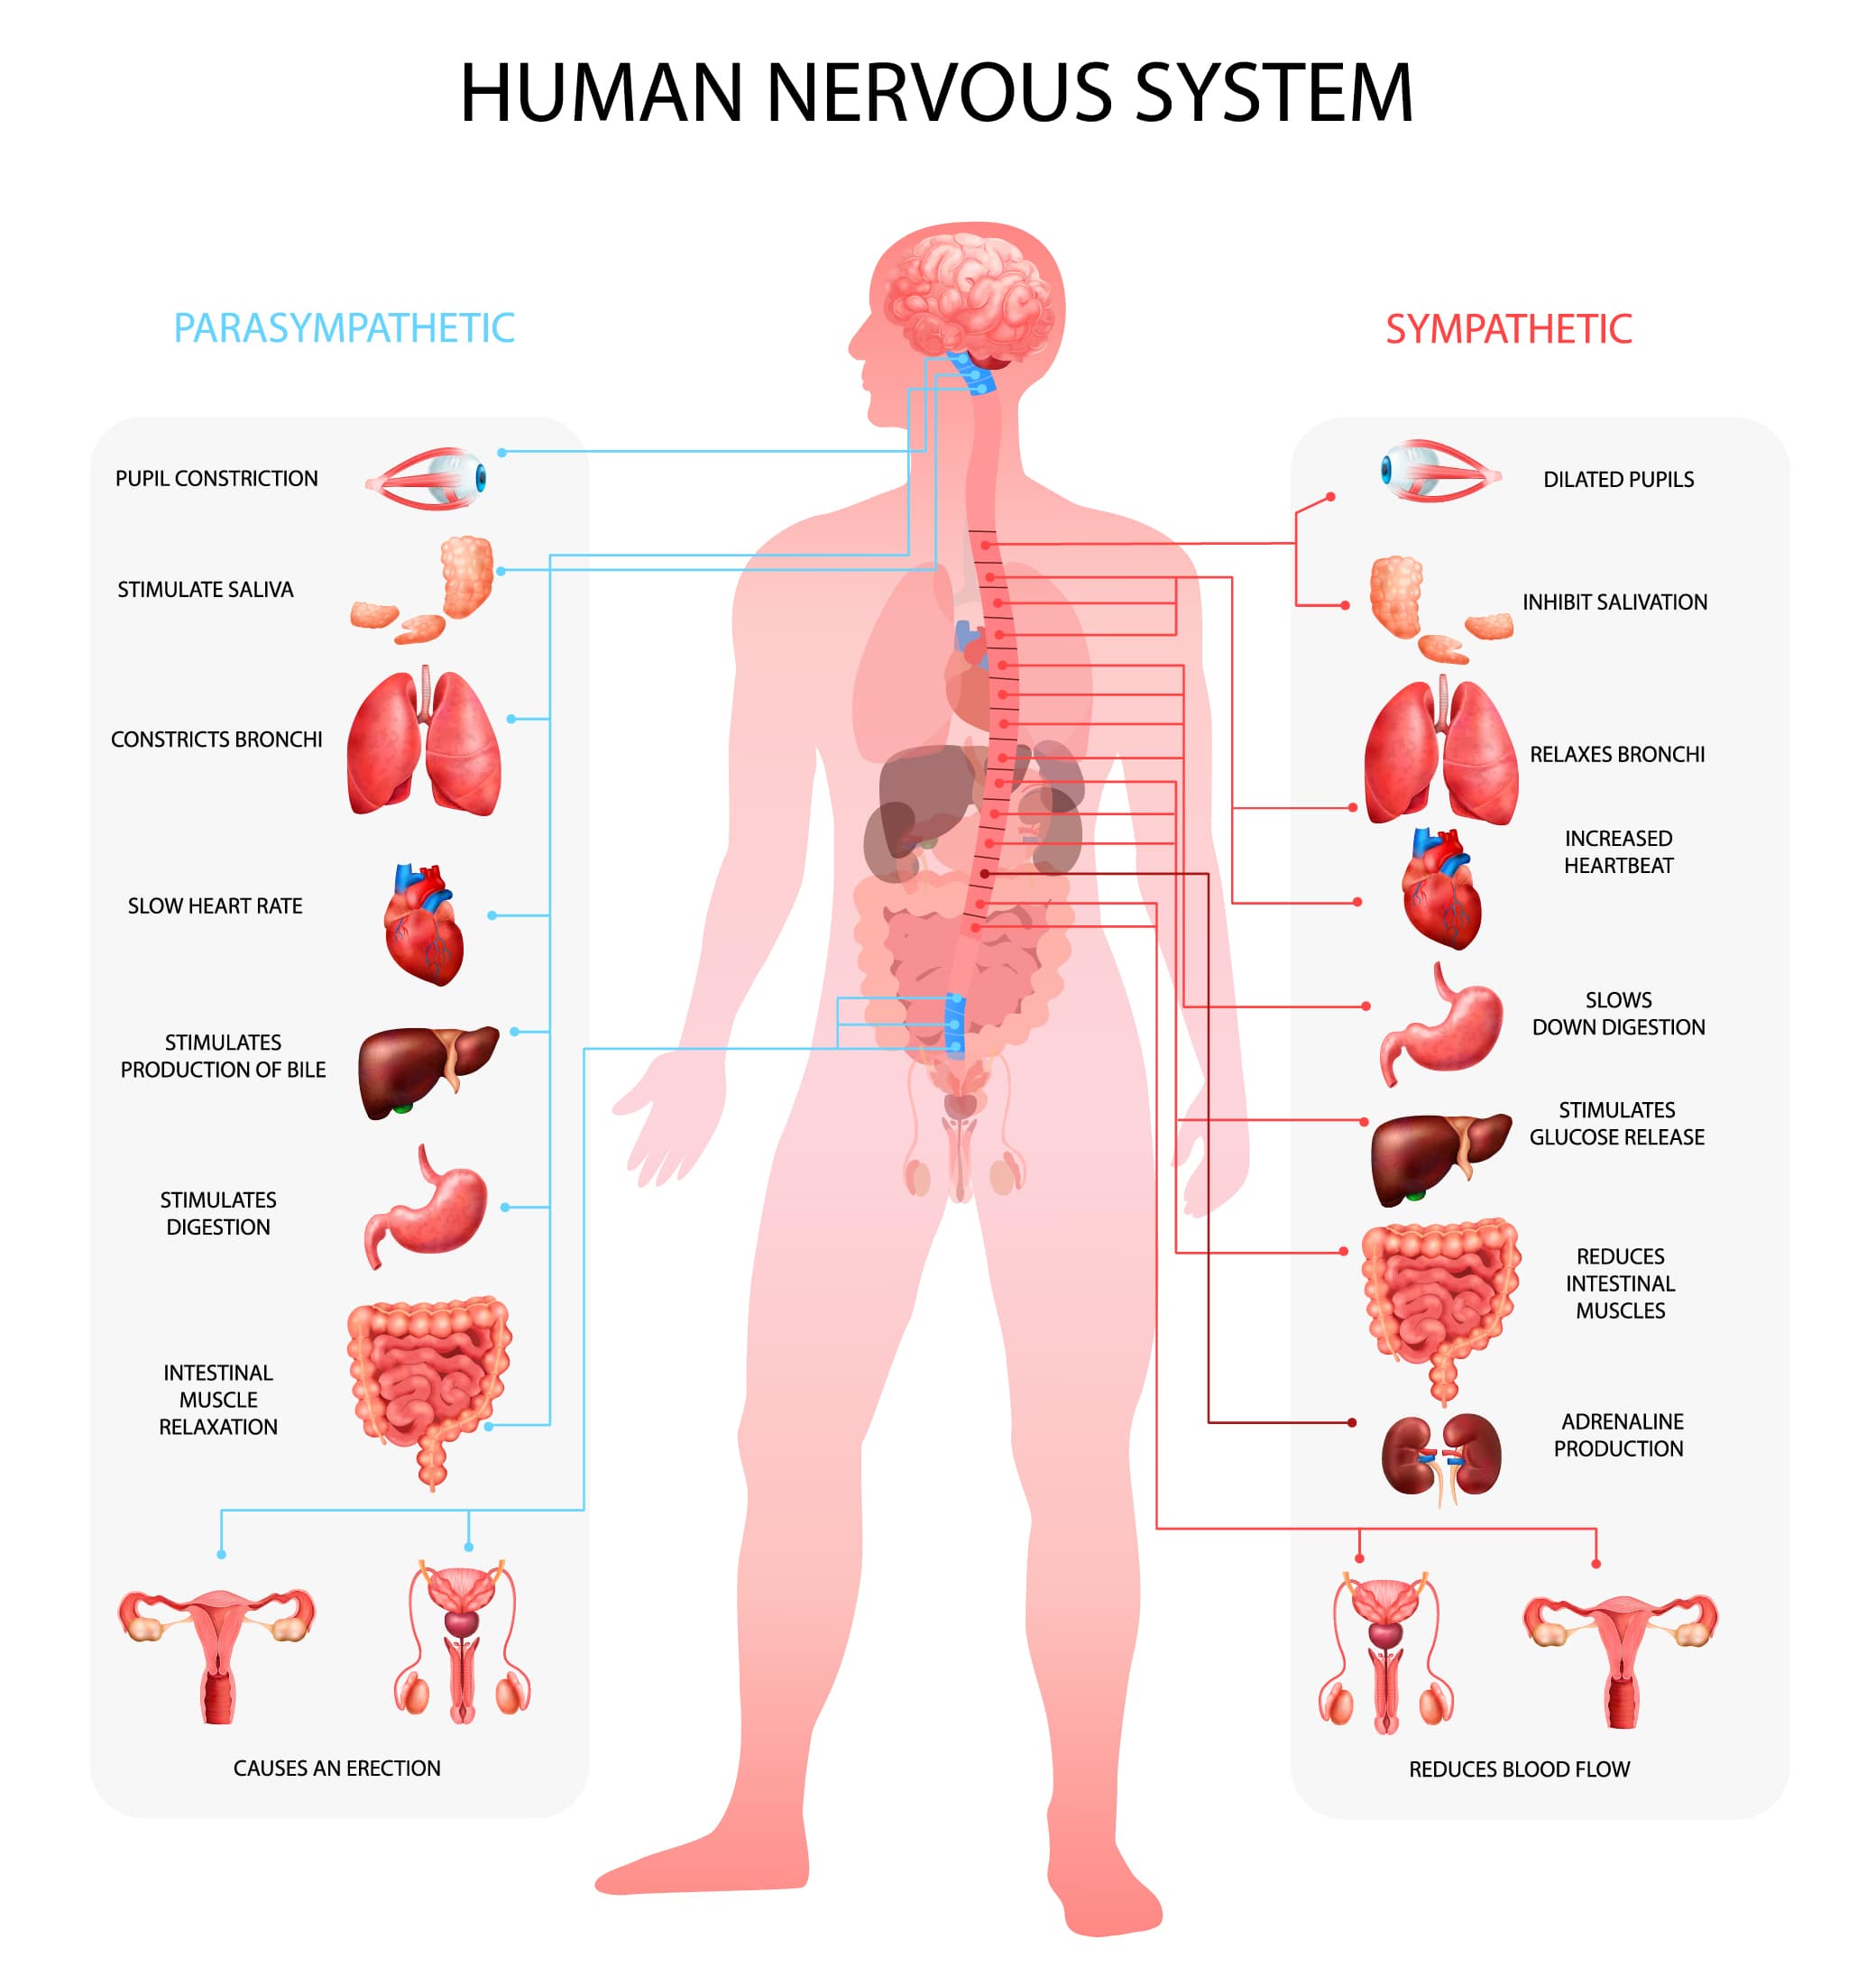 Le système nerveux autonome